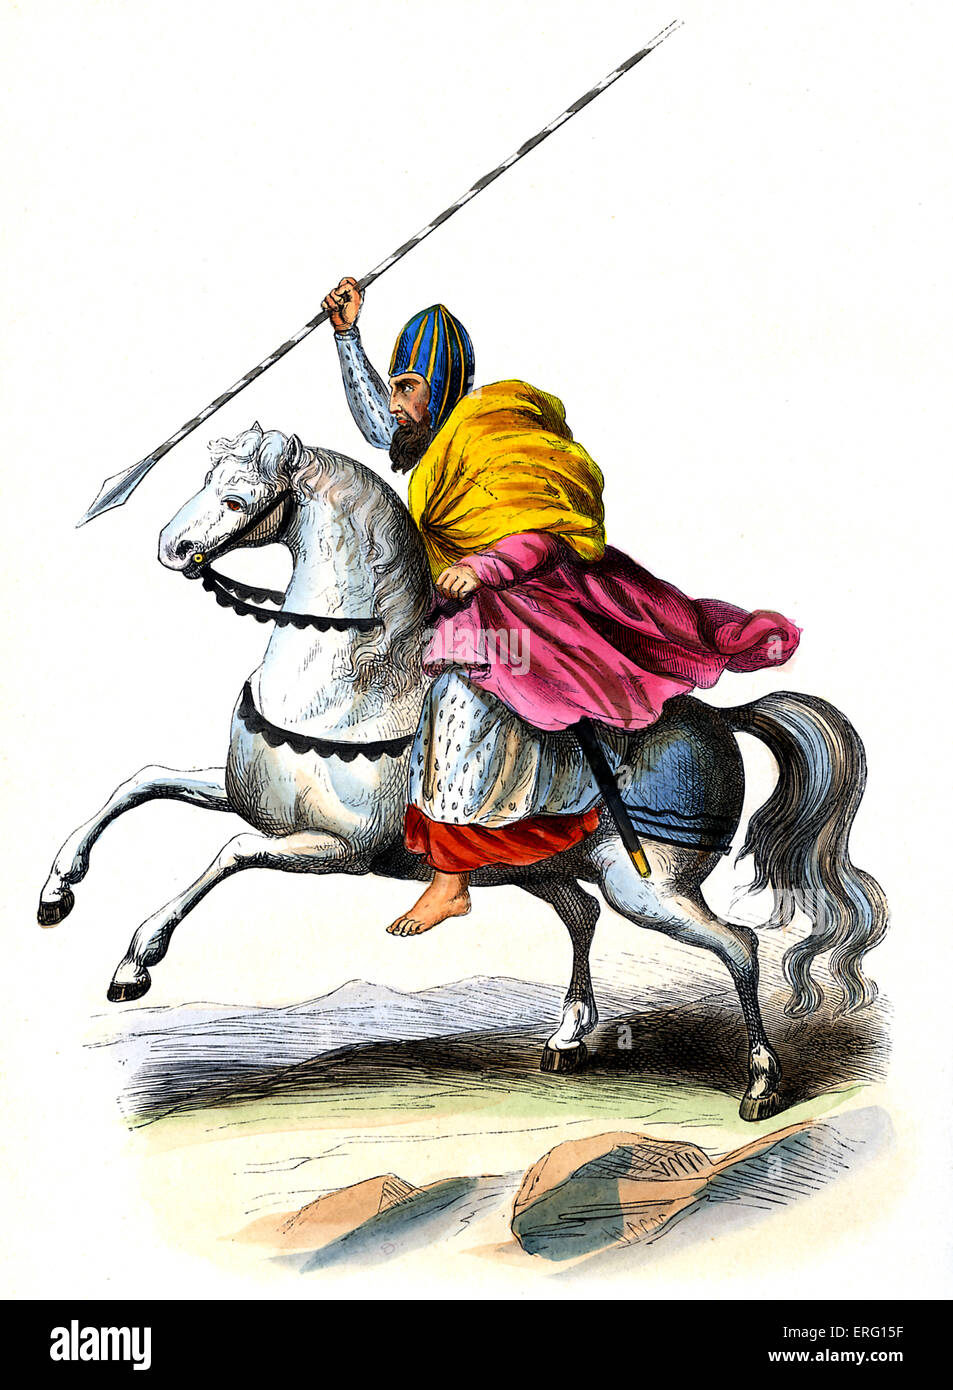 Arthur Macmurroch, König von Leinster auf einem Pferd mit Speer. Irische Ritter kämpfte gegen die Armeen von Richard II. im Jahre 1395. c. 1847 handbemalte Kopie des 14 Jahrhunderts, th. Stockfoto